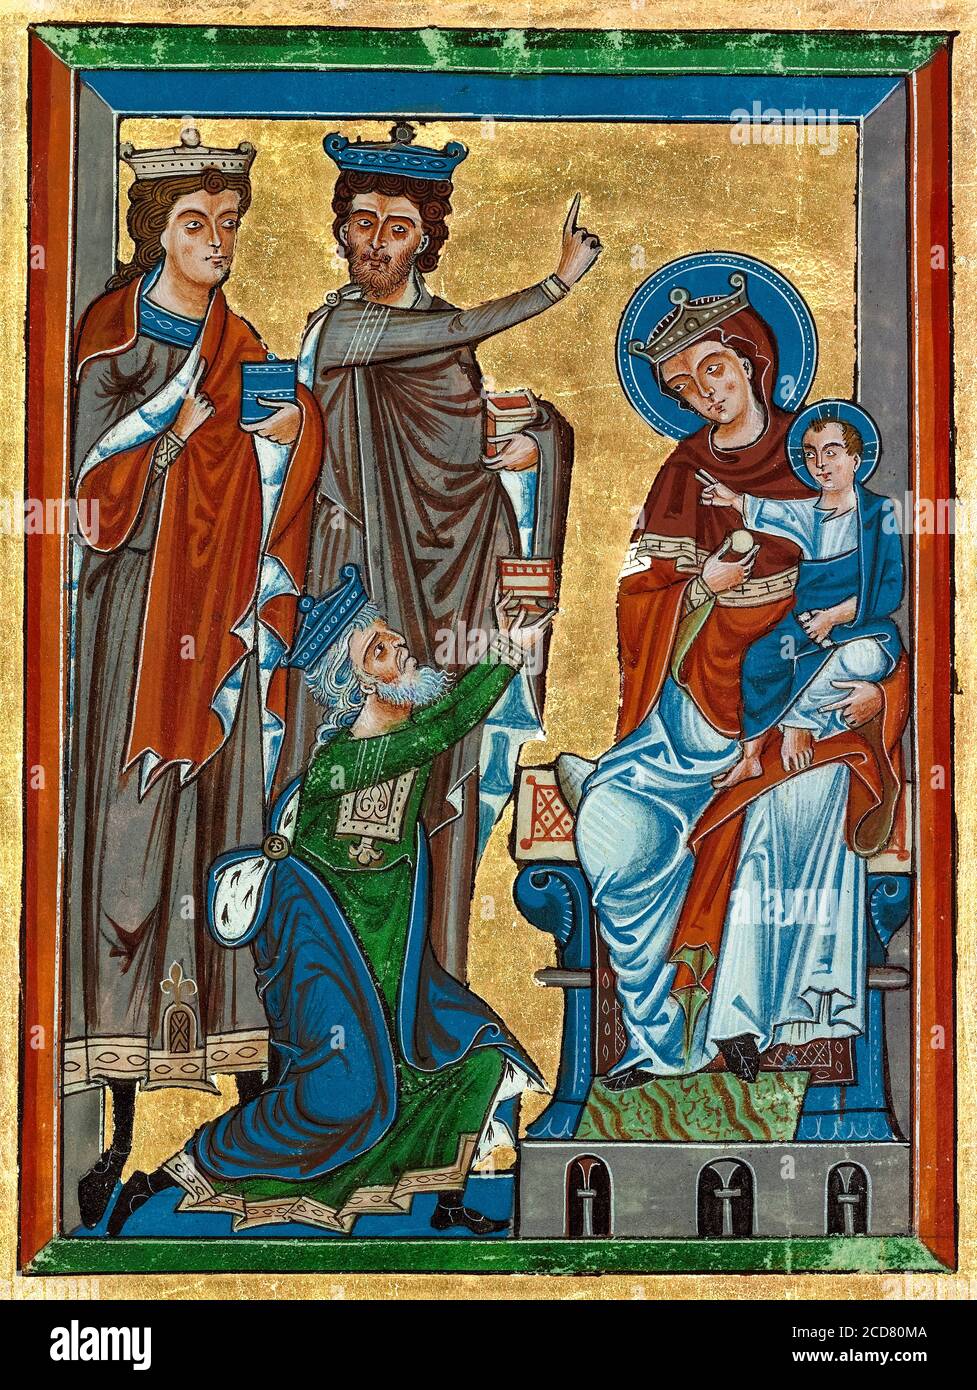 La Adoración de los Magos de un salterio del siglo XIII, manuscrito iluminado alrededor de 1240 Foto de stock